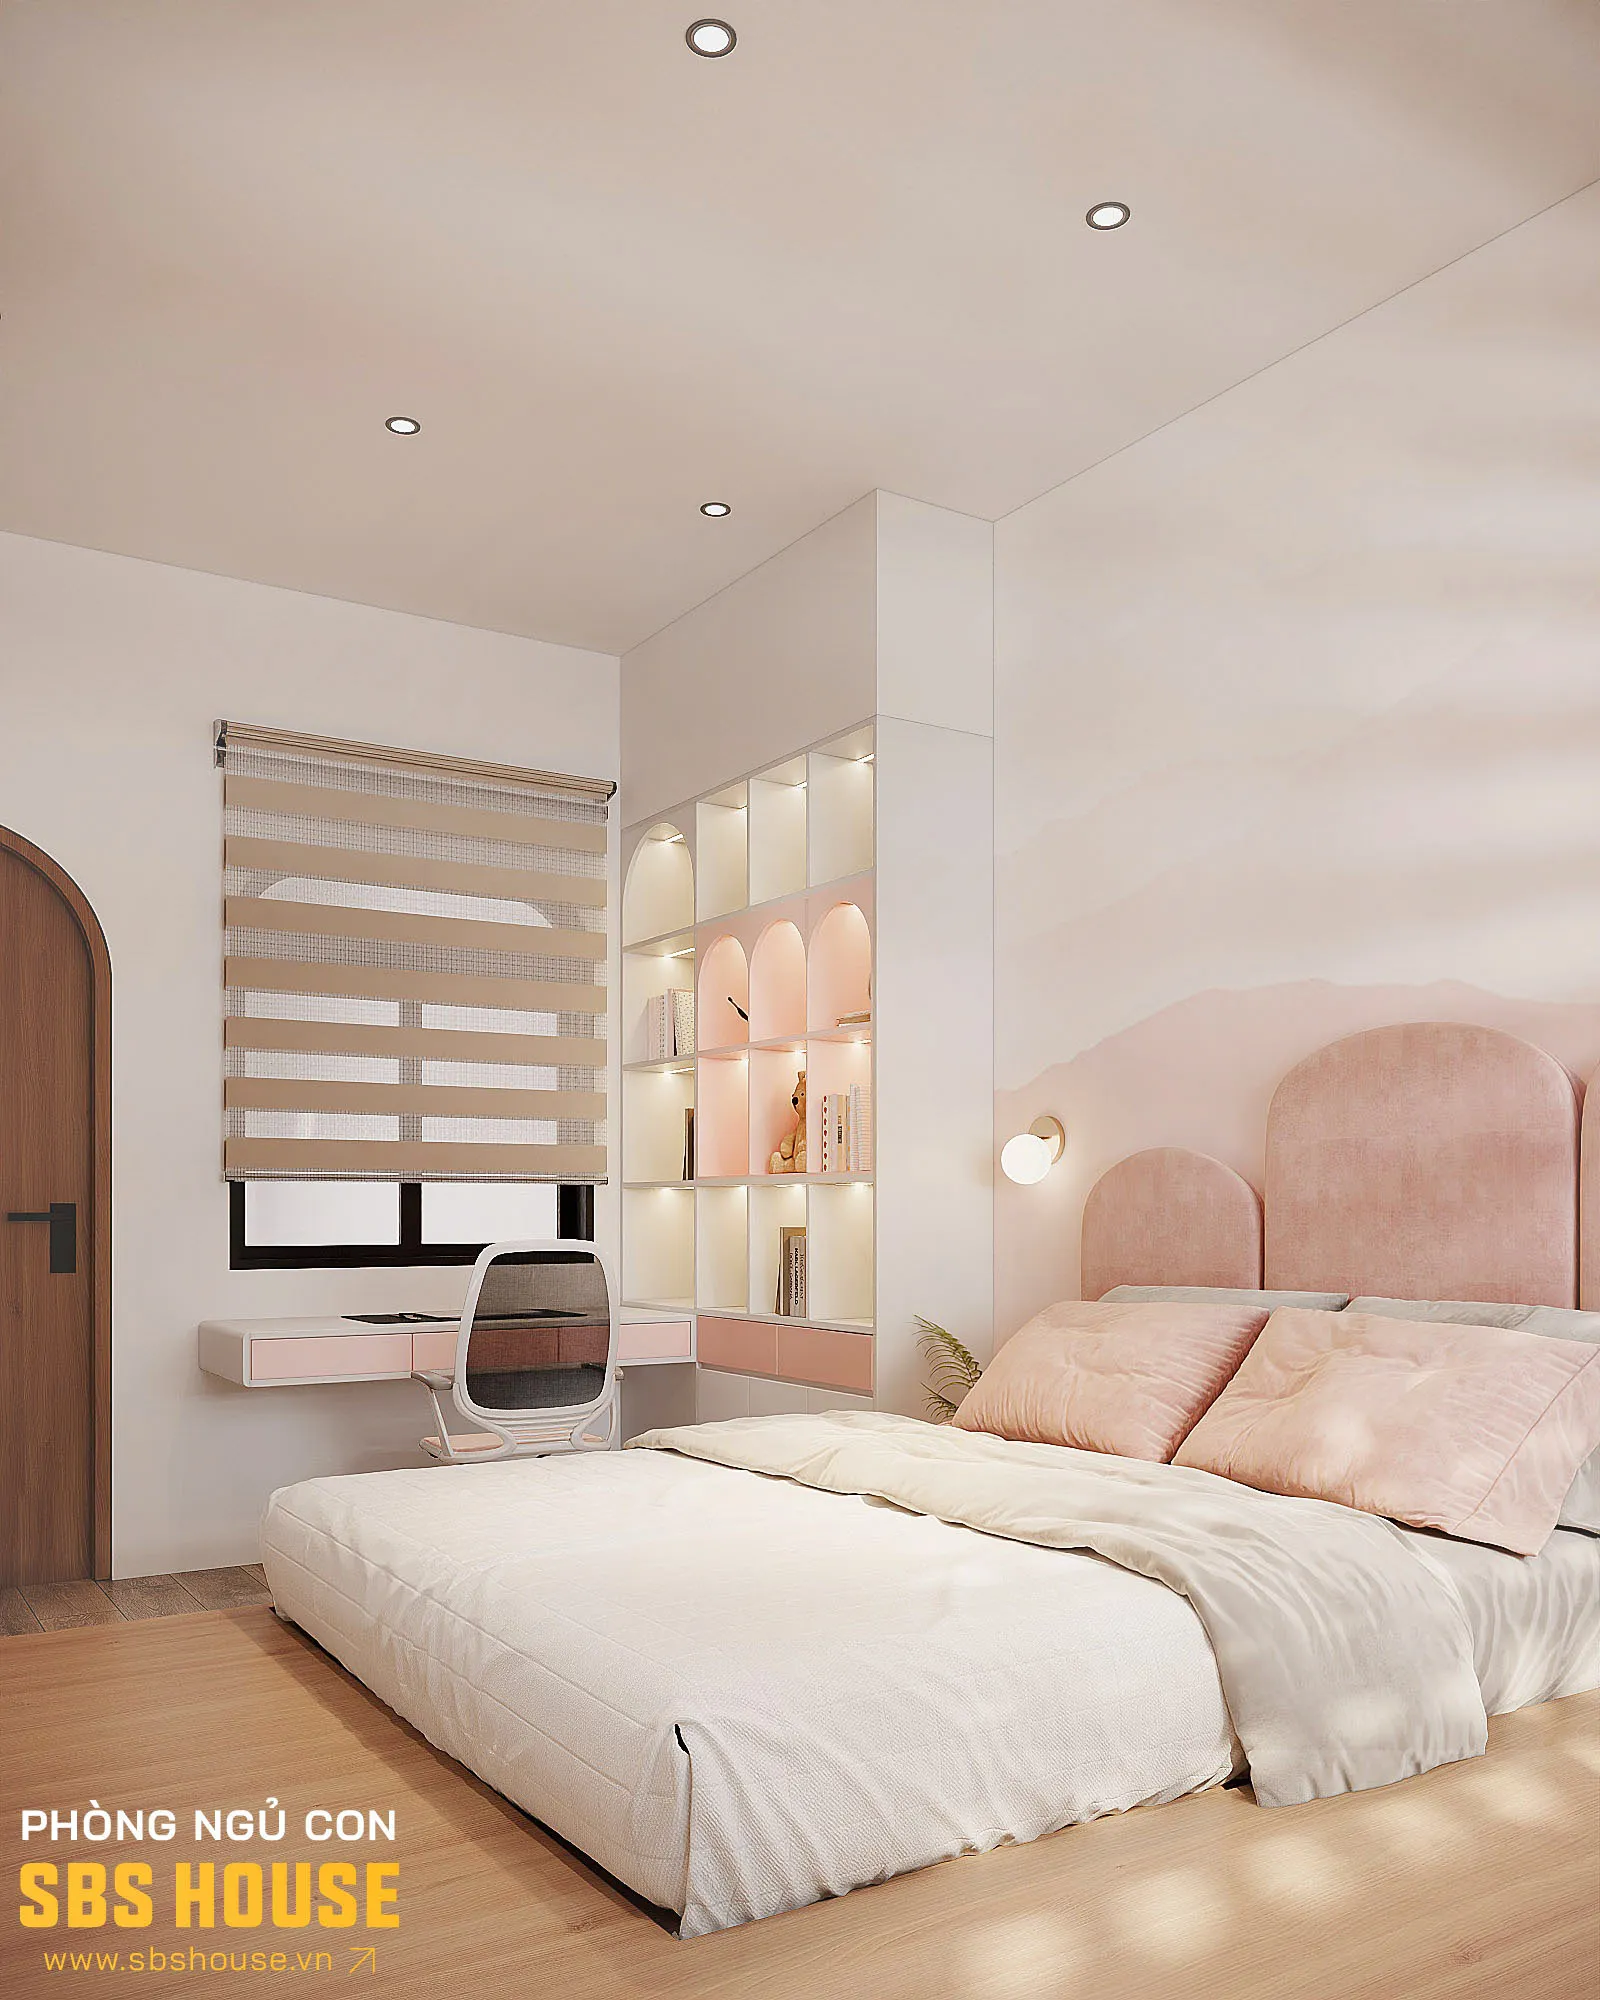 Phòng ngủ với tone màu hồng dịu dàng cho bé gái